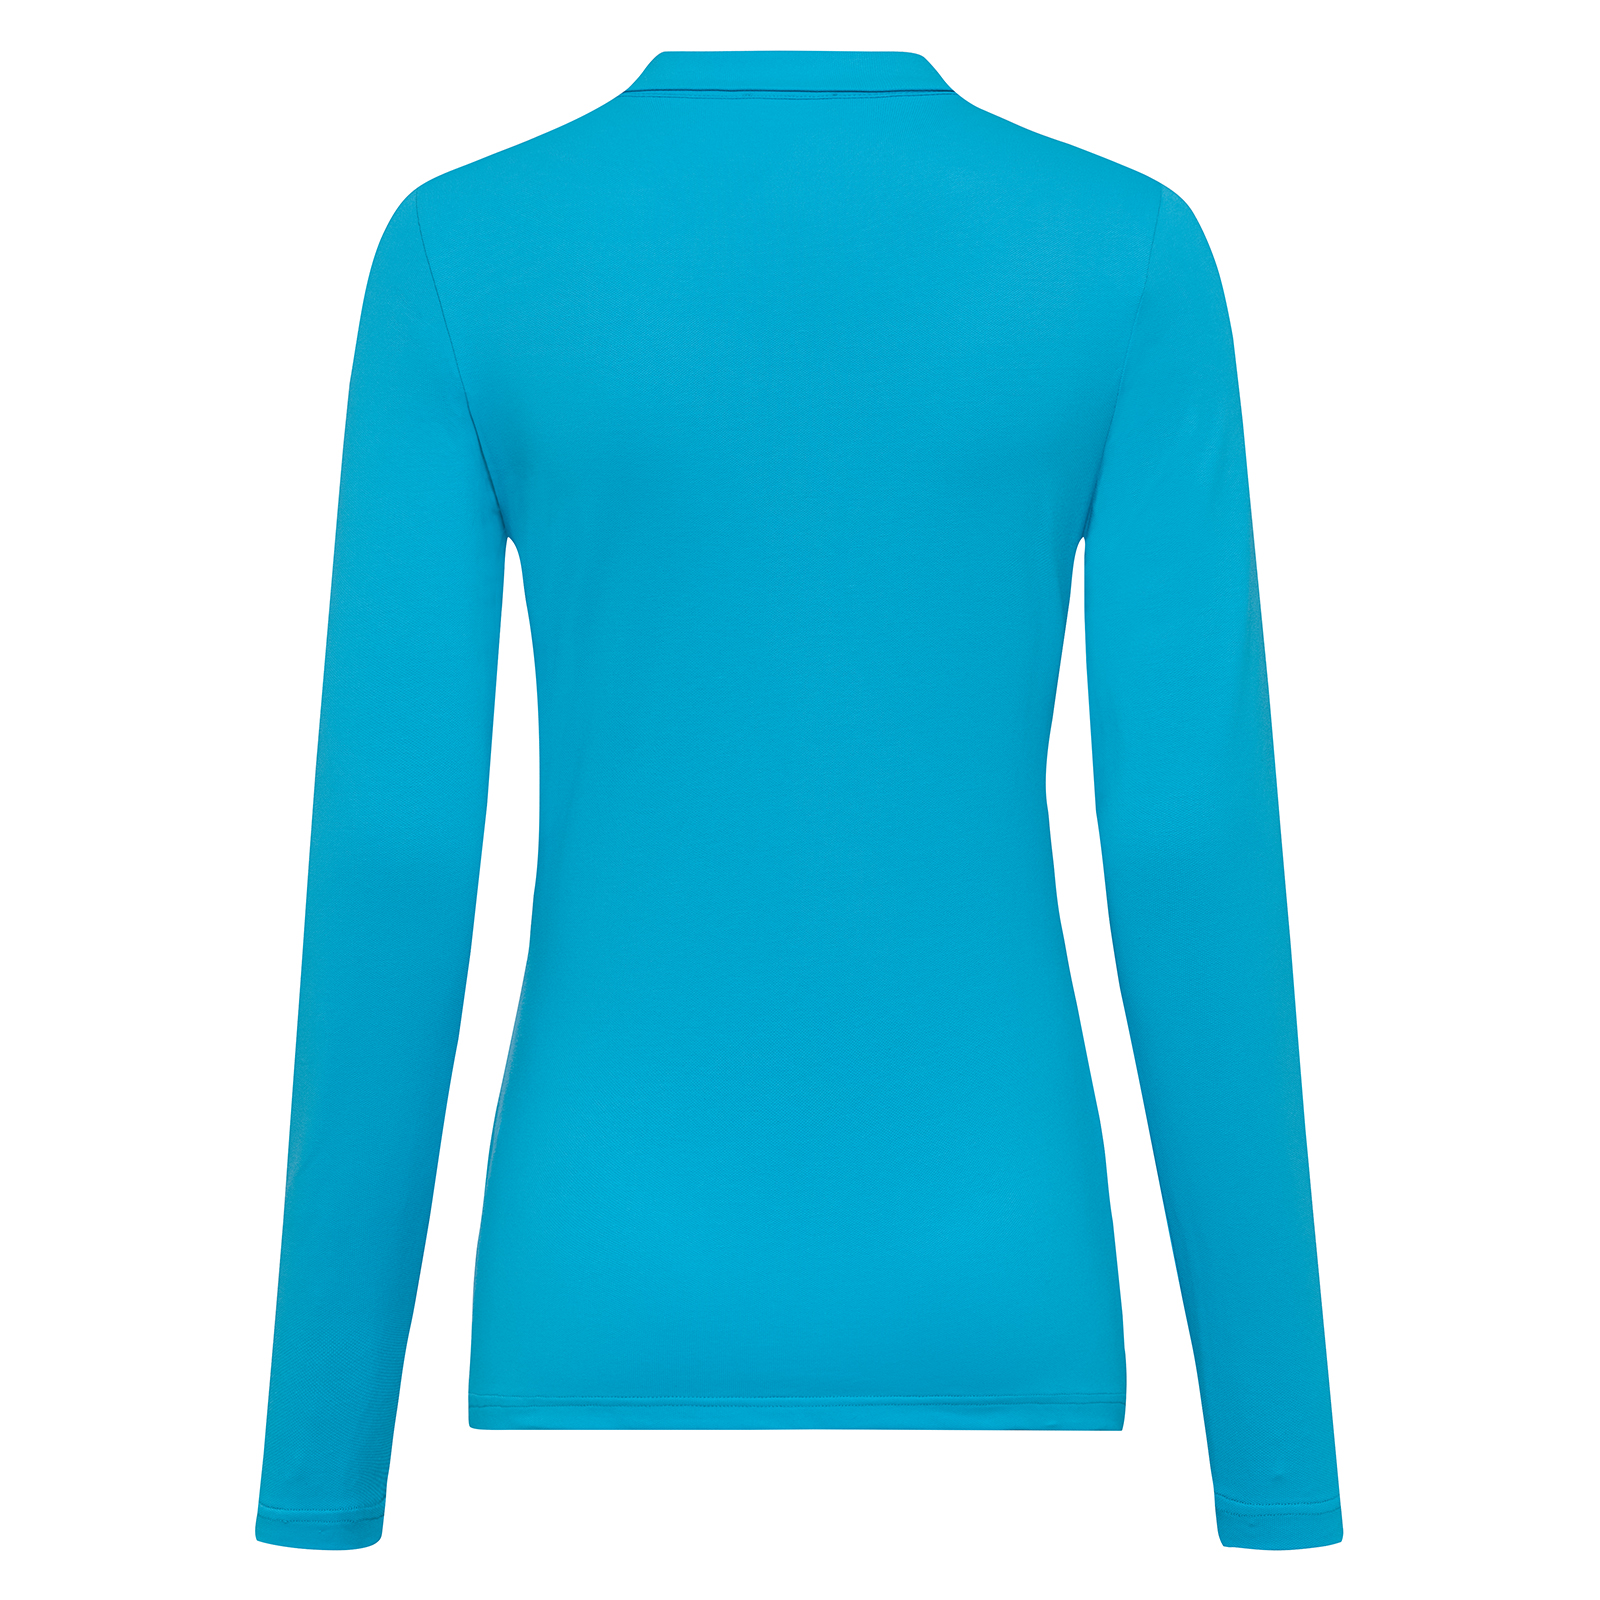 Camiseta de golf con protección UV de la Solheim Cup para mujeres